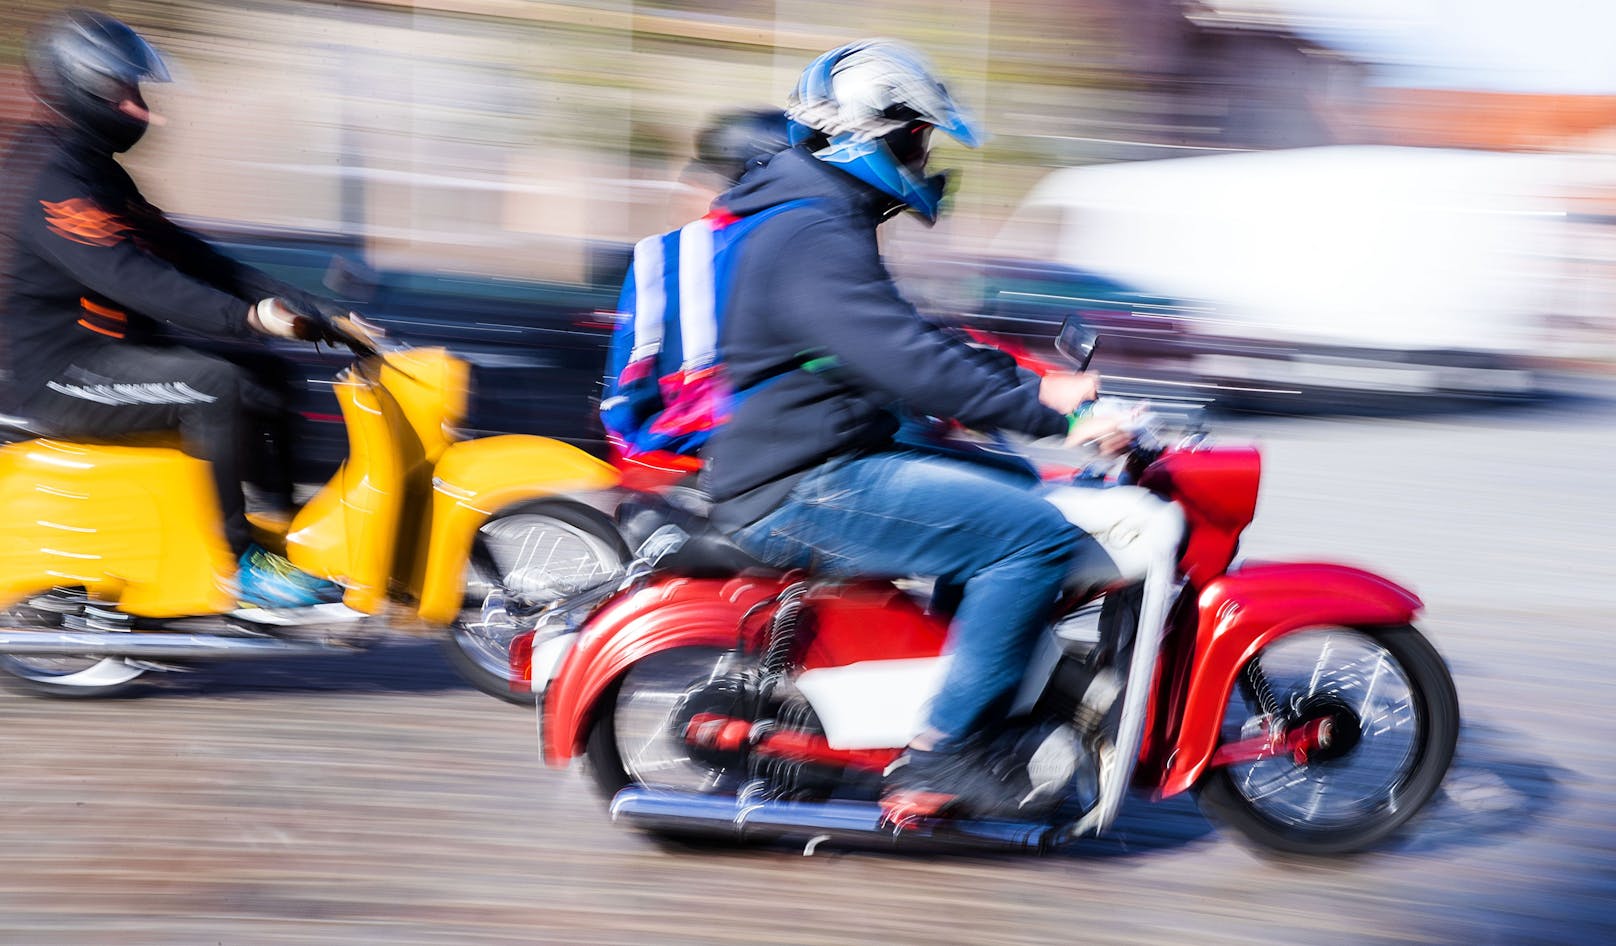 Moped-Rowdy (15) erhält nach Flucht 25 Anzeigen